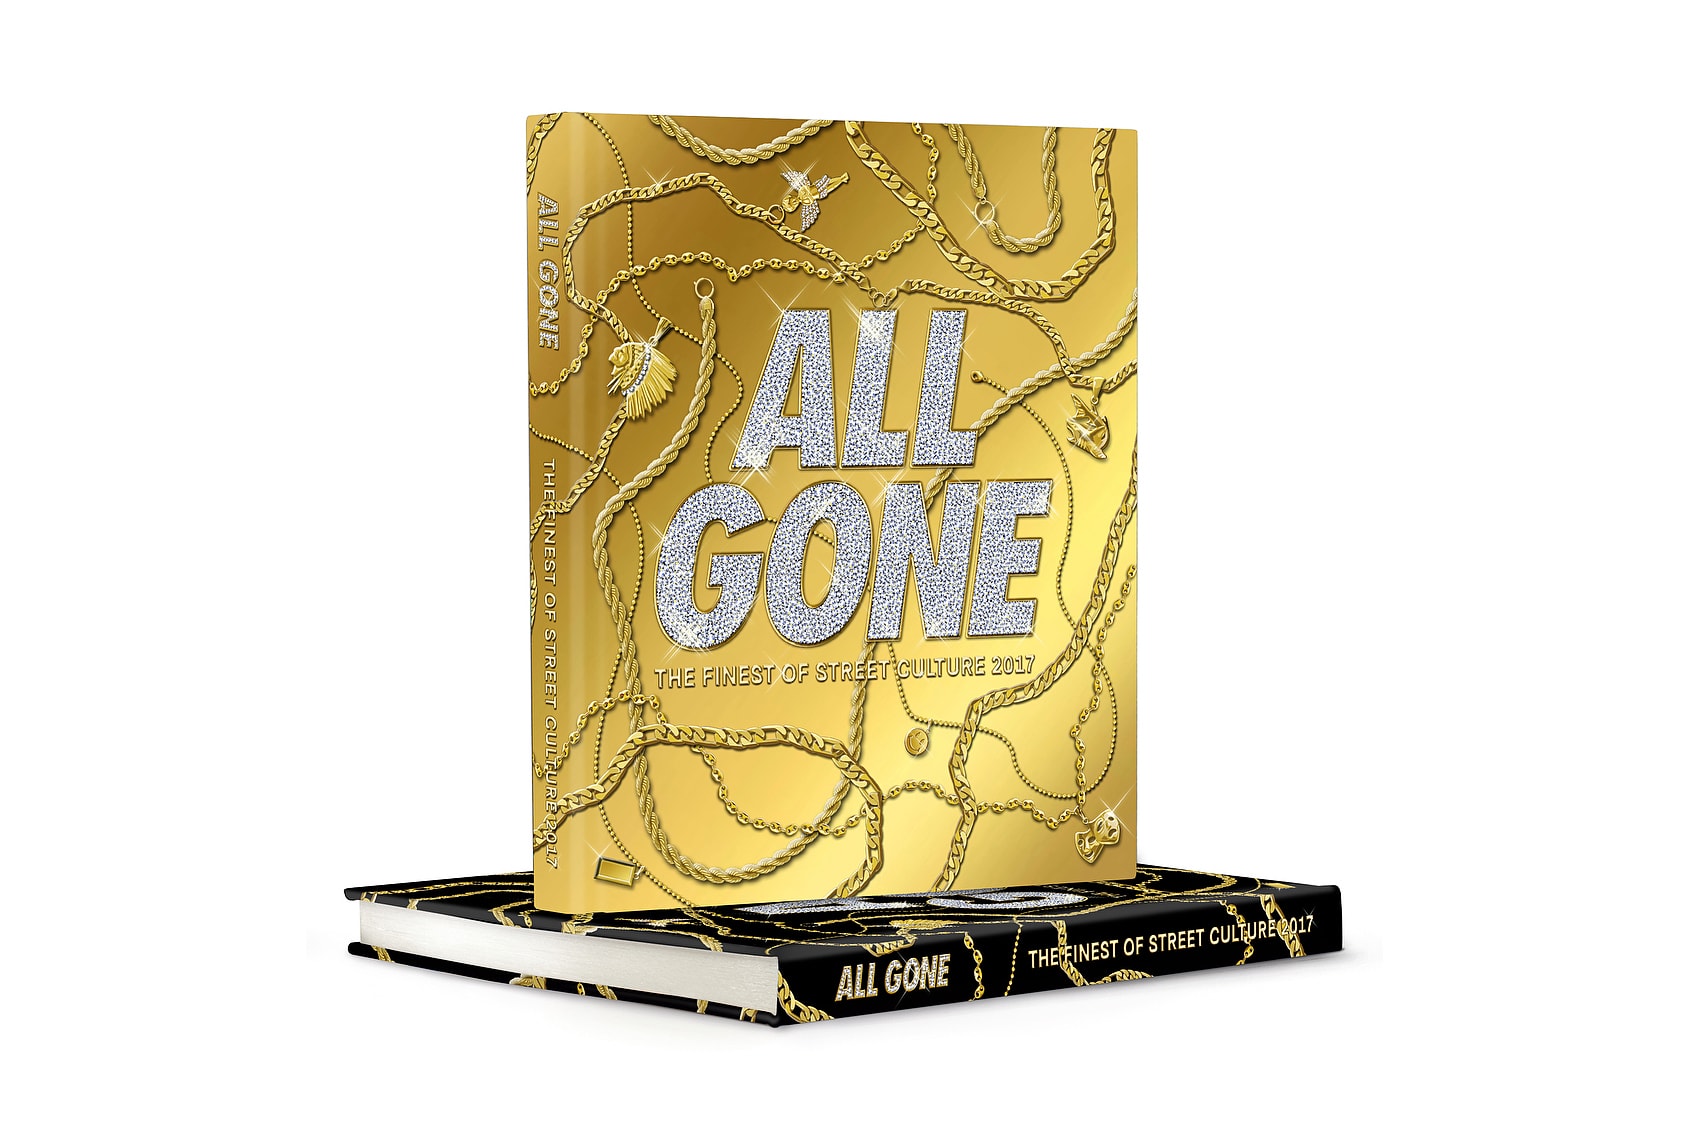 年度街頭聖經《All Gone 2017》正式發佈